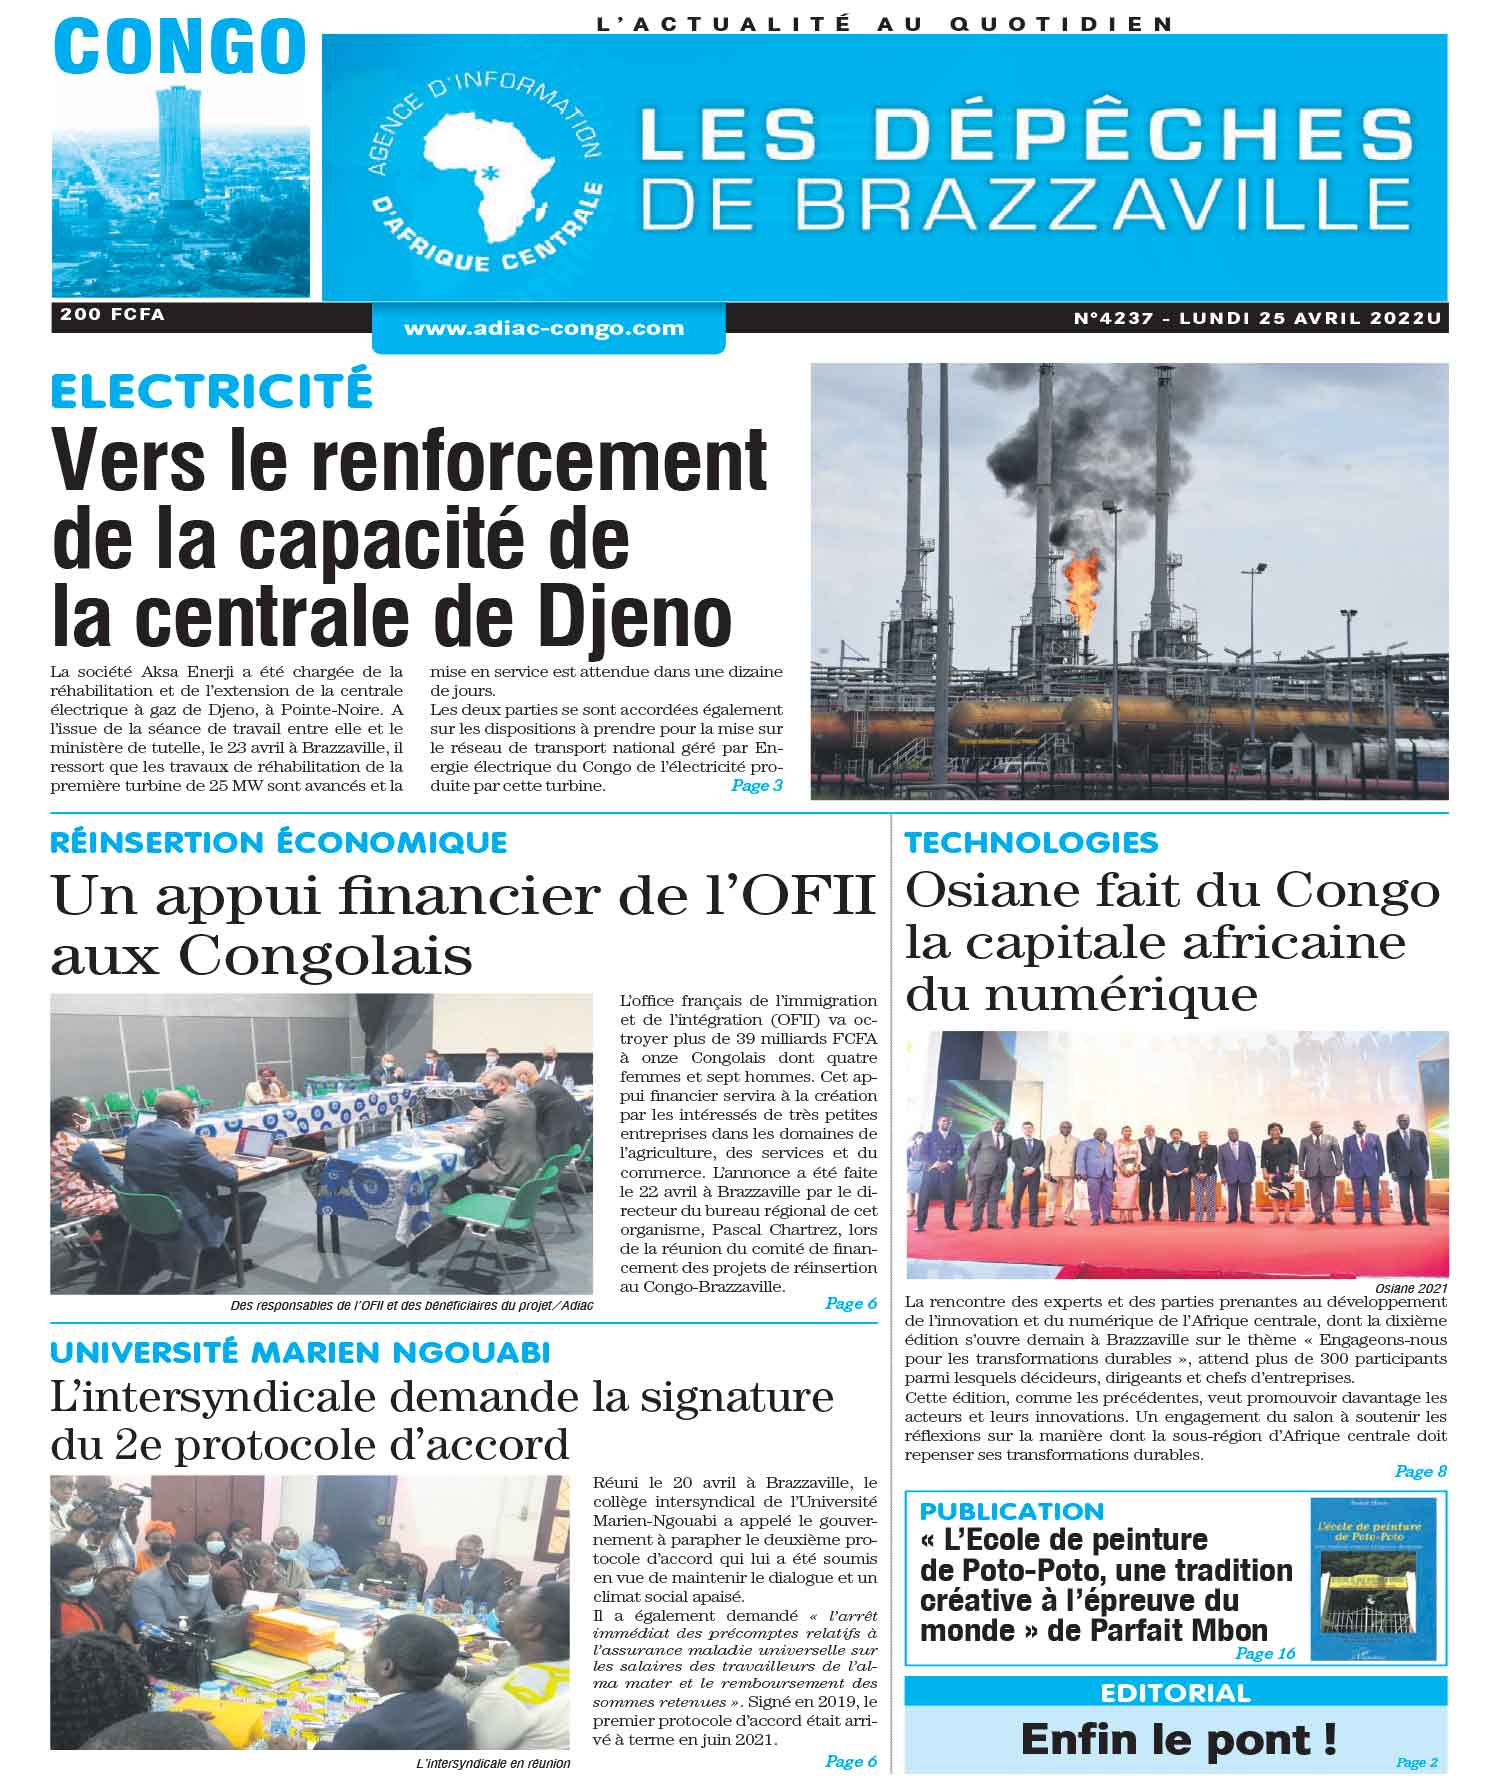 Cover Les Dépêches de Brazzaville - 4237 